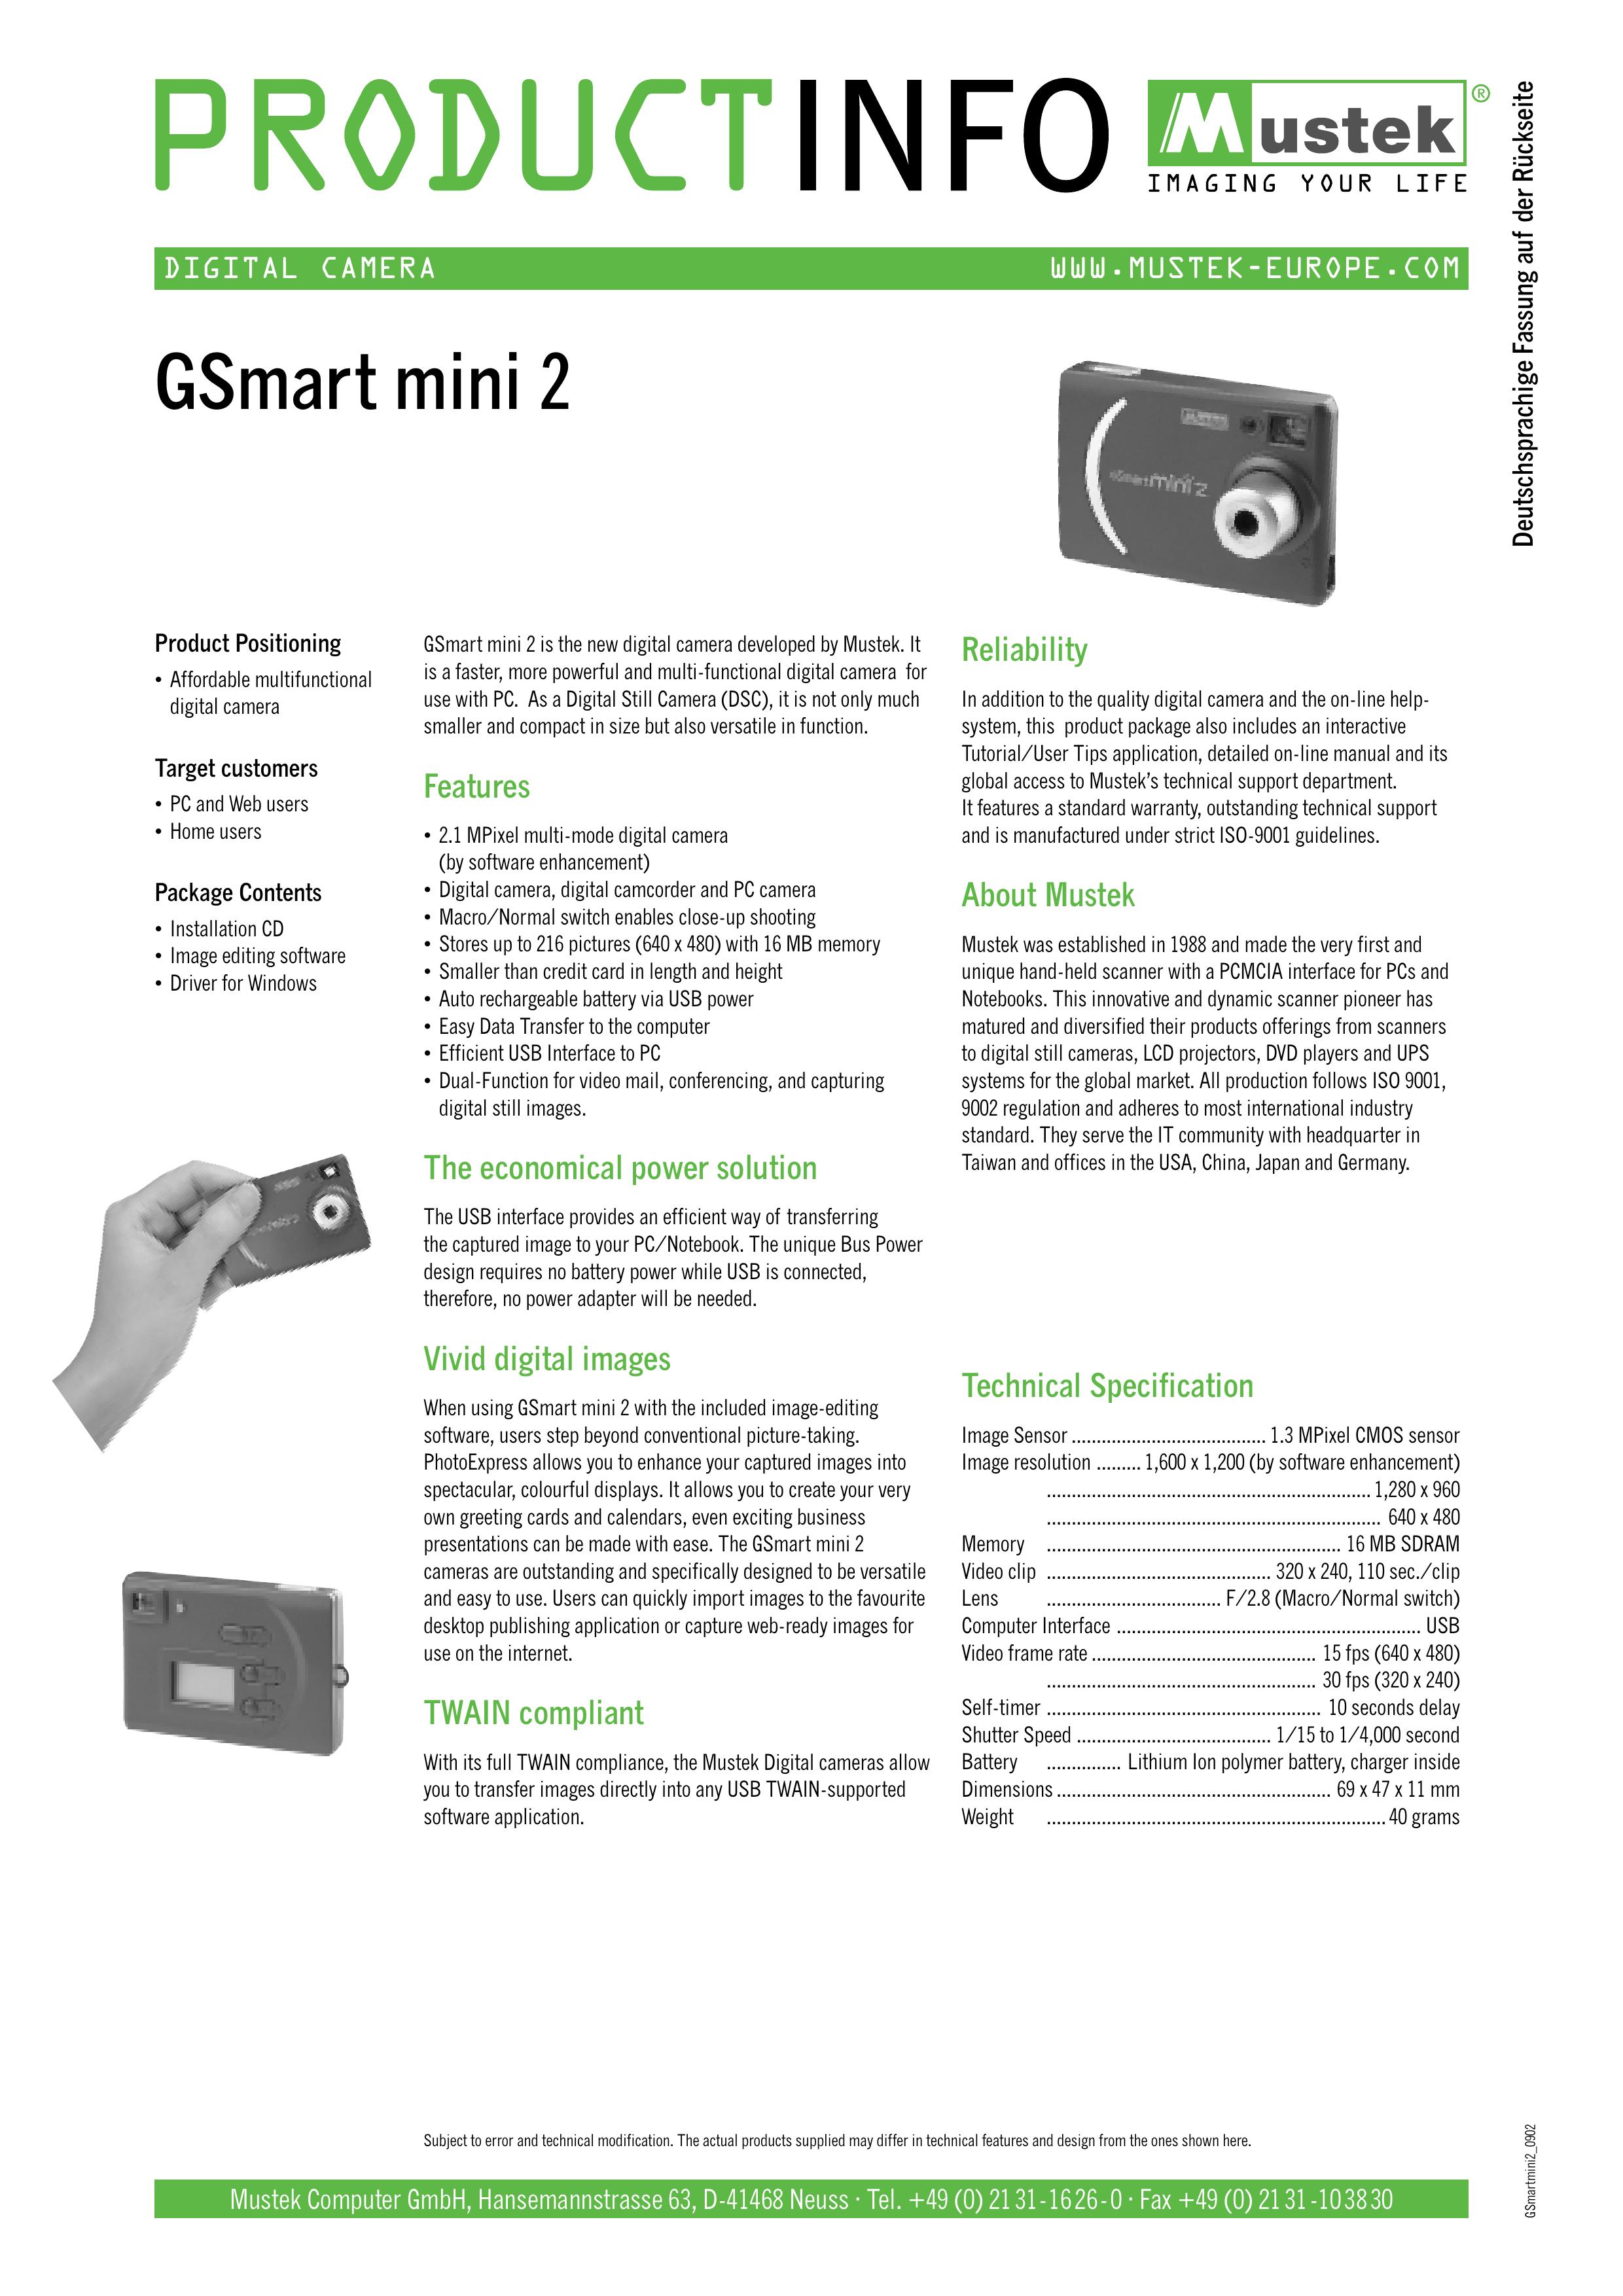 Mustek GSmart mini 2 Camcorder User Manual